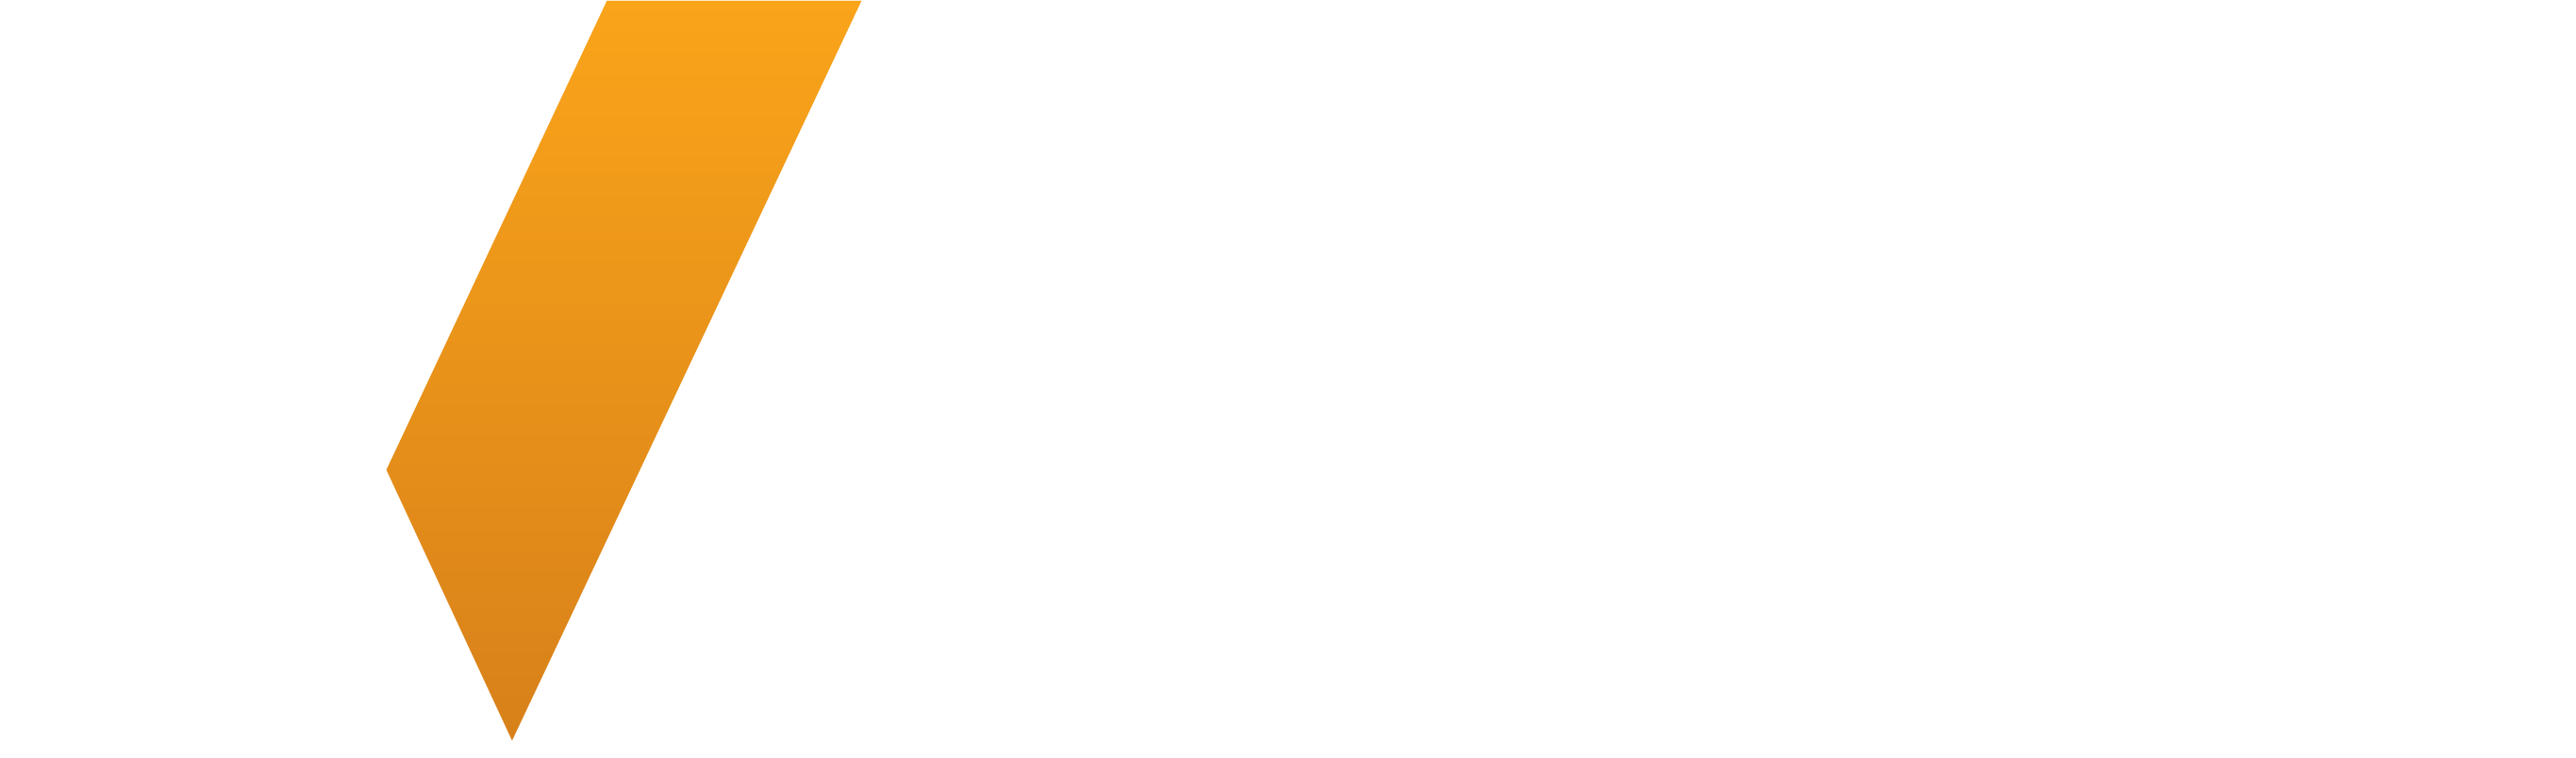 Logo Velox Branco